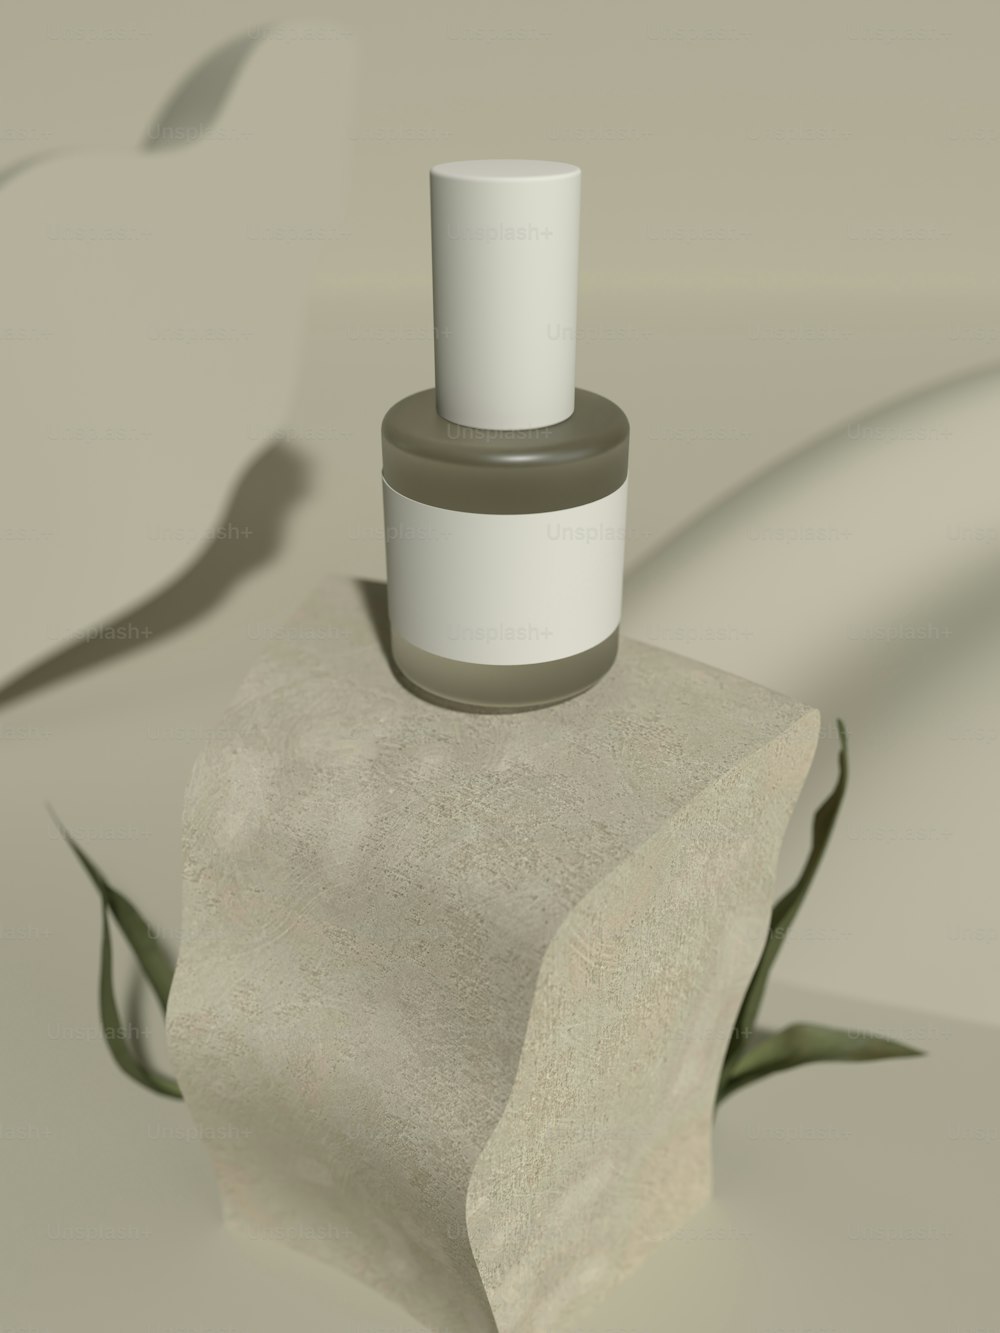 un oggetto cilindrico bianco con un cappuccio bianco su una superficie bianca